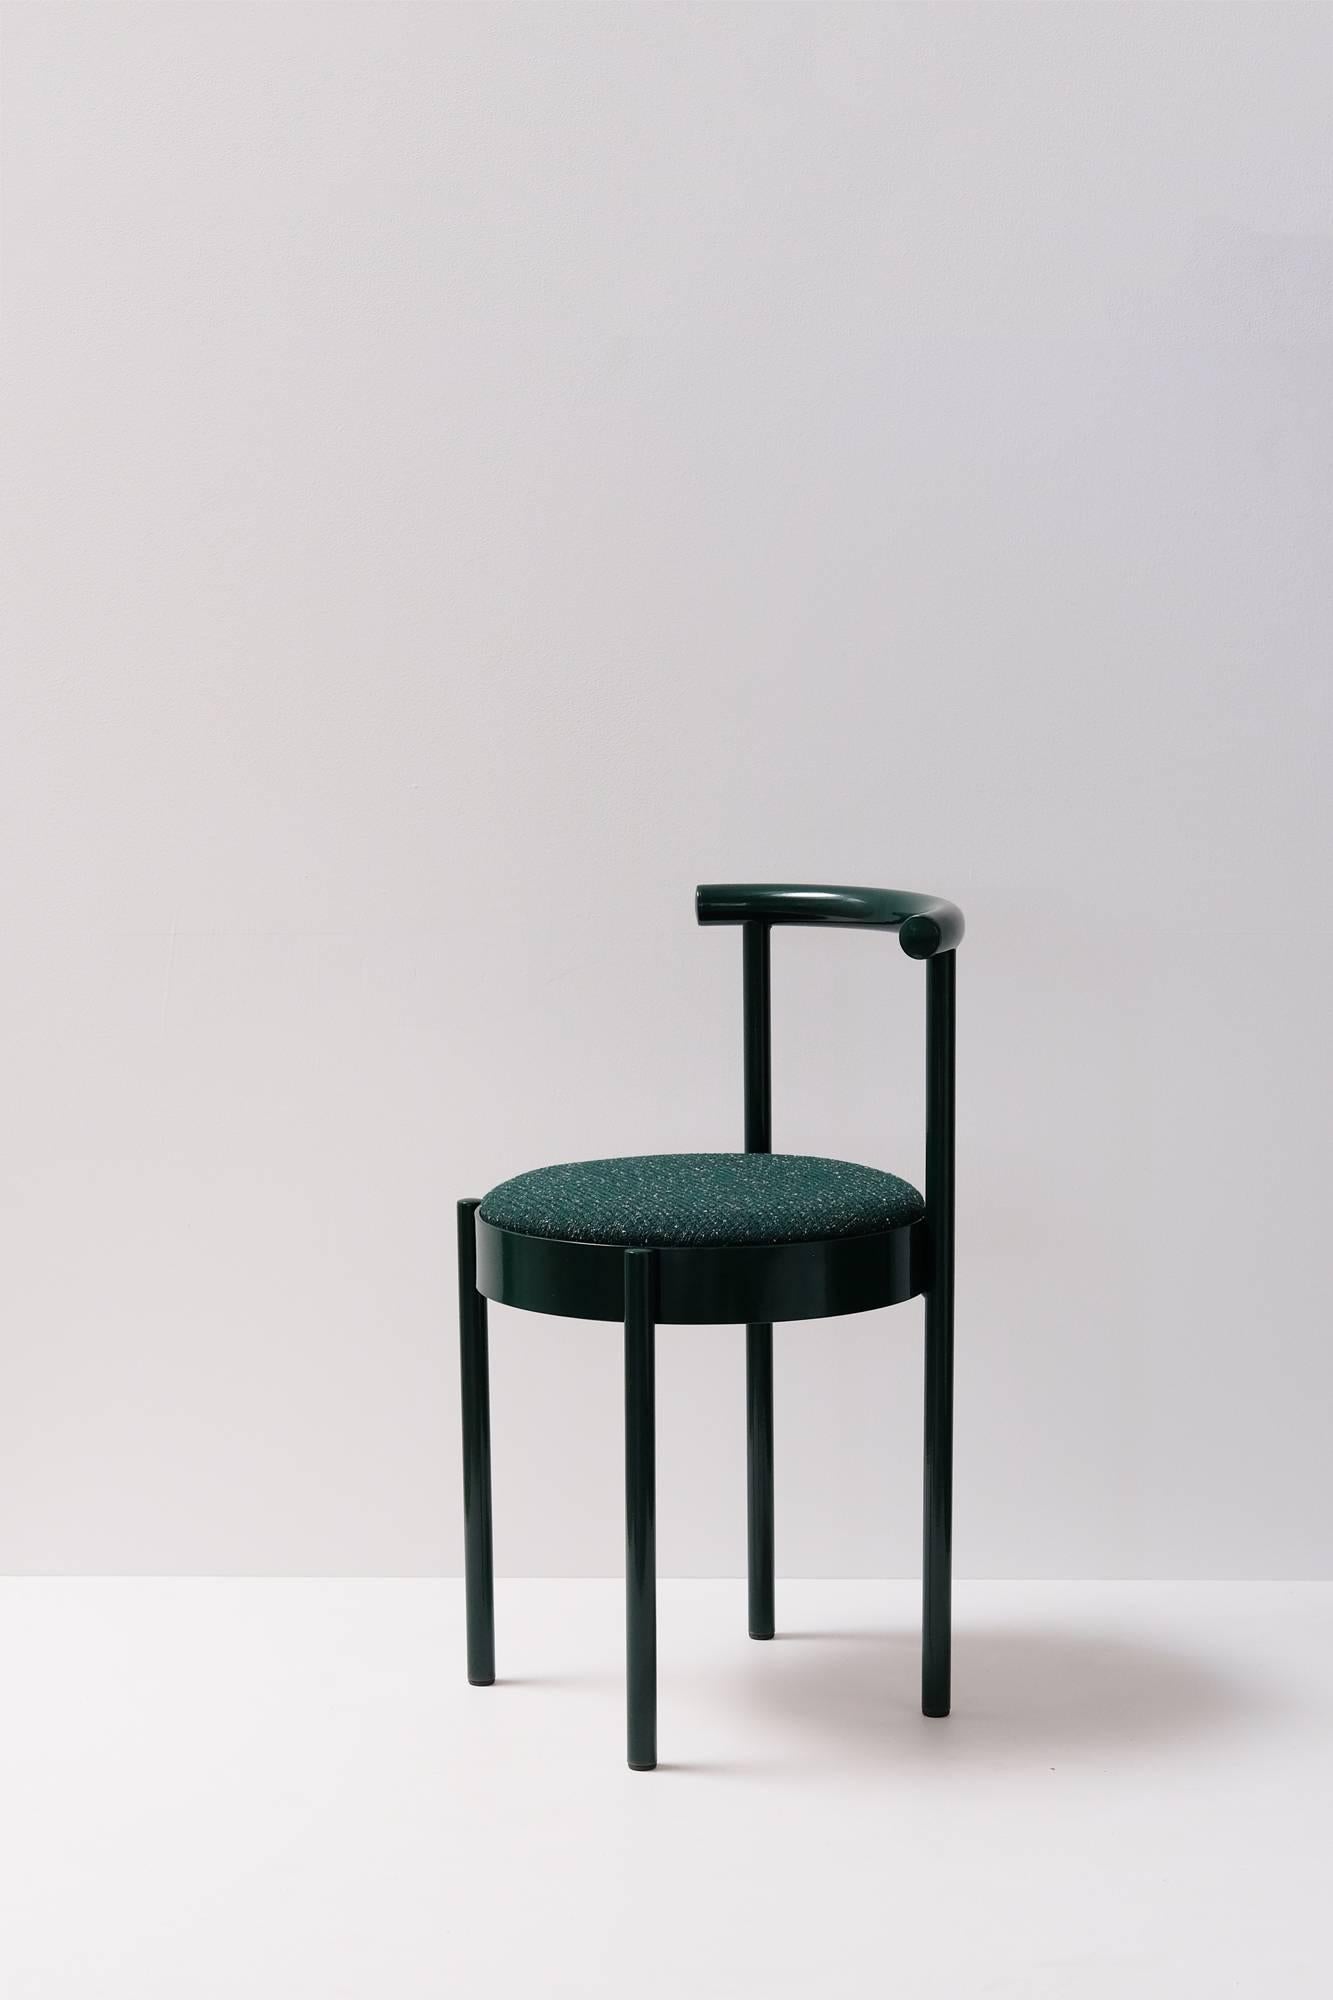 Soft Forest Green Chair by Daniel Emma, Made in Australia (Australisch) im Angebot